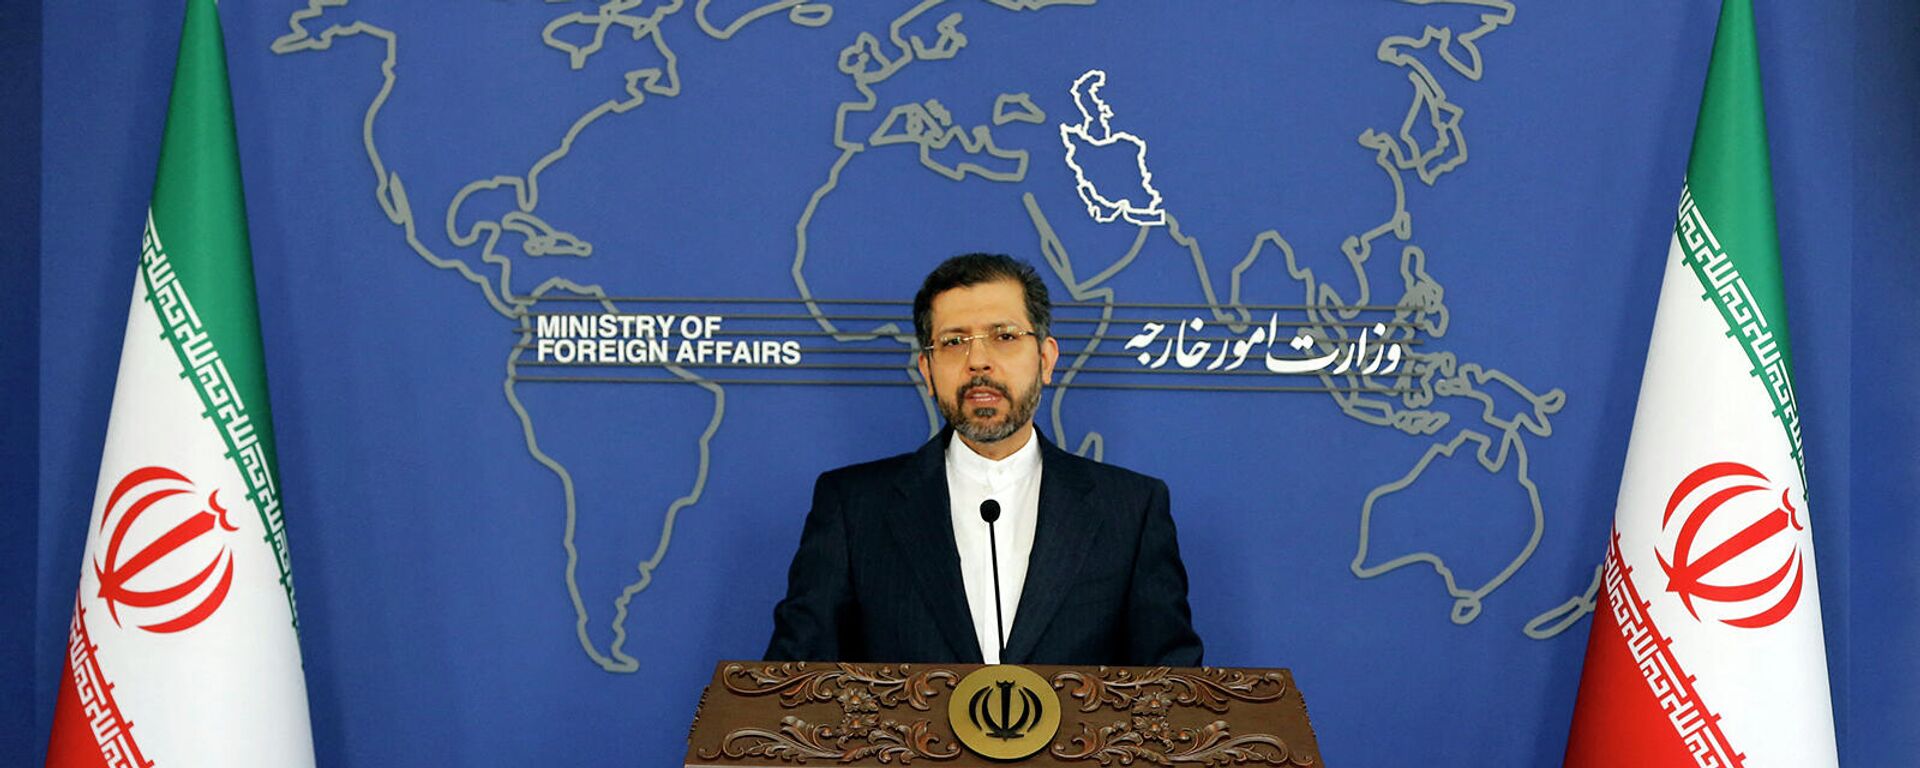 Официальный представитель министерства иностранных дел Ирана Саид Хатибзаде во время пресс-конференции (15 ноября 2021). Тегеран - Sputnik Армения, 1920, 08.11.2021